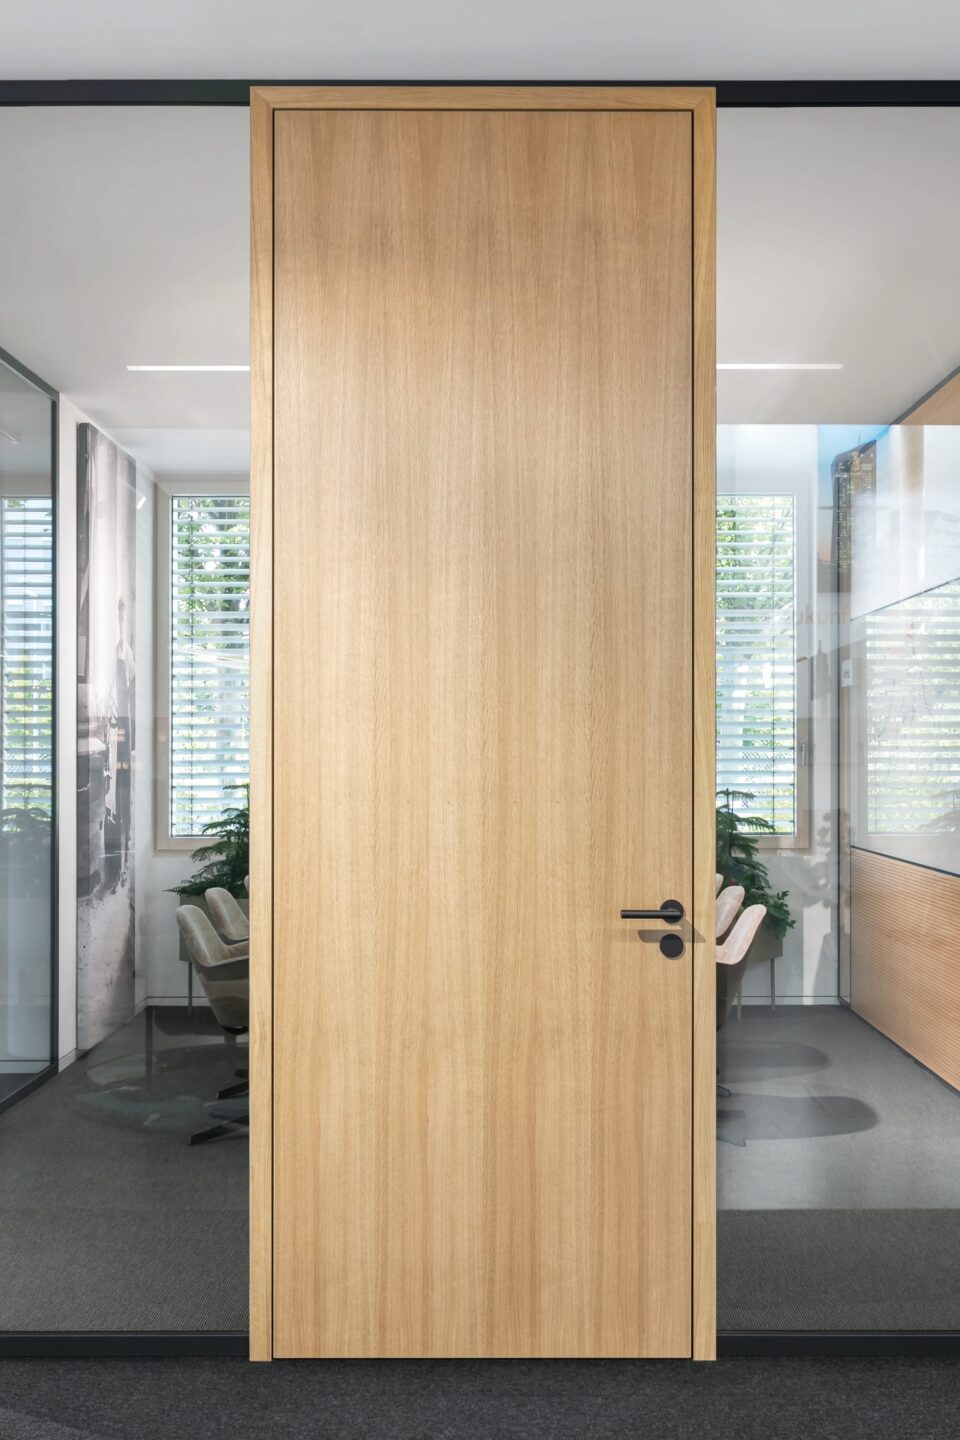 Wooden door element H70 with door frame T70 wood